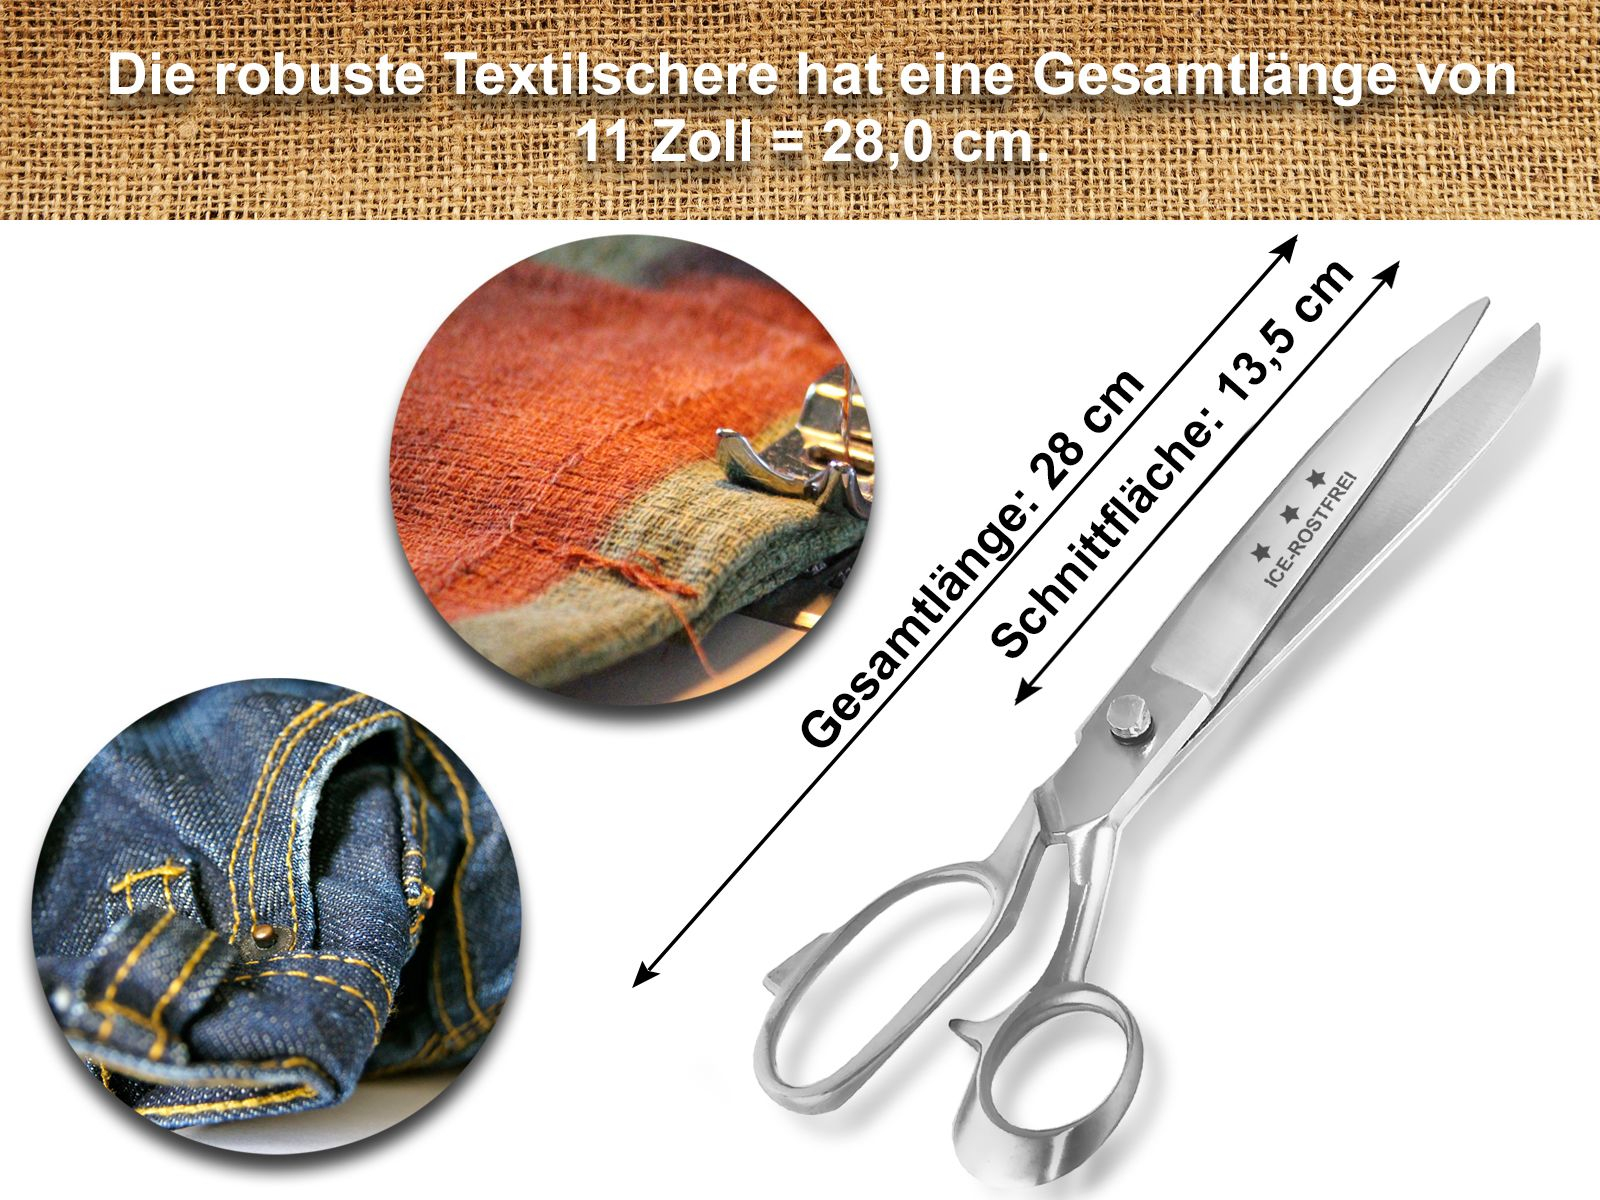 Premium Große ICE-Tempered Stoffschere cm 81033797 28 Schneiderschere Eisgehärtet Handgeschliffene Textilschere Schere